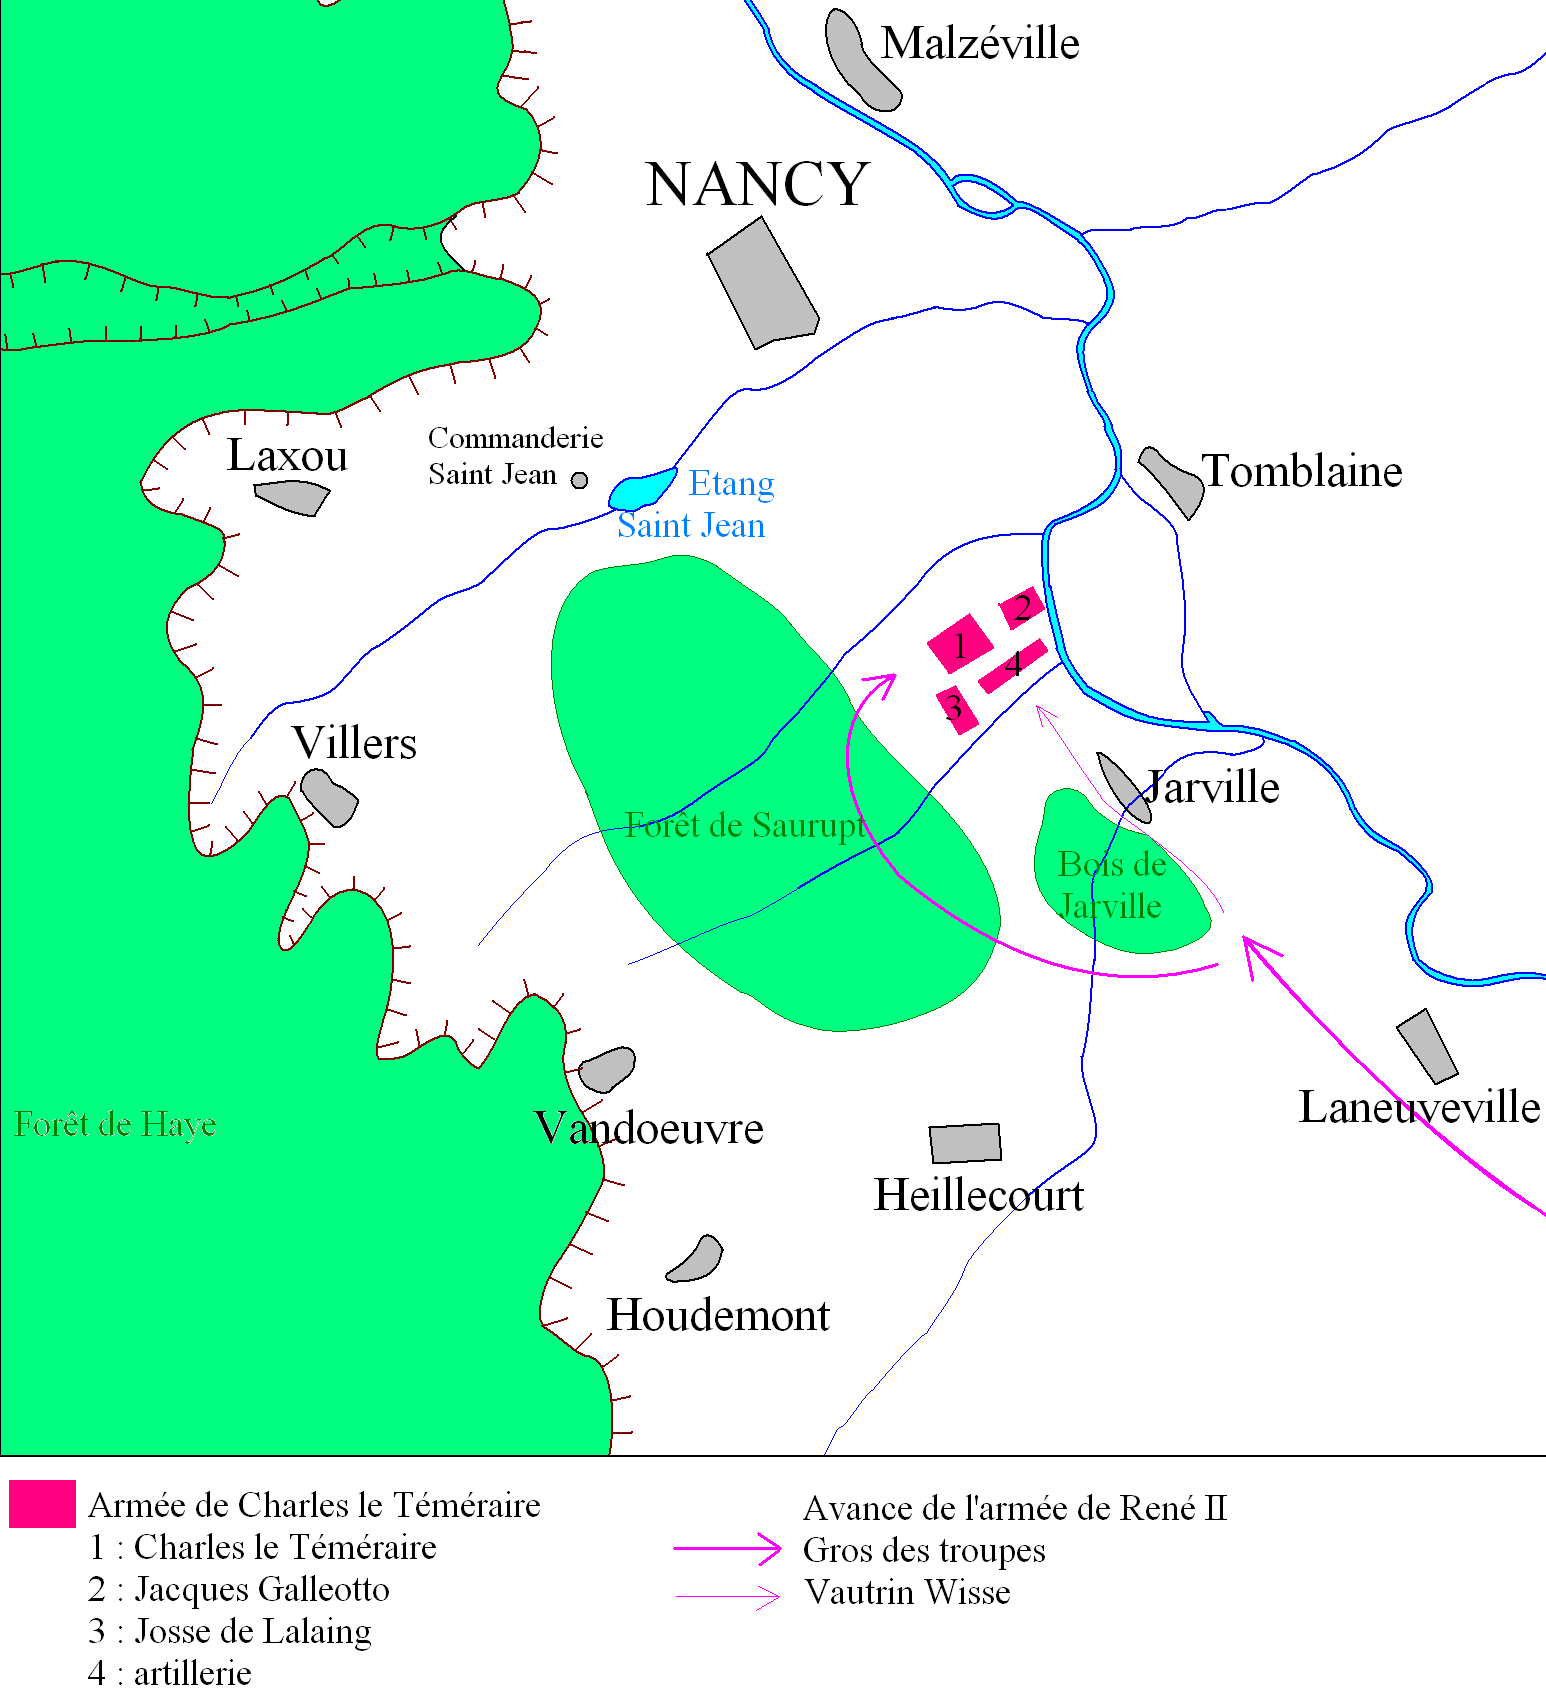 Plan de la Bataille de Nancy © Odejea - licence [CC BY-SA 3.0] from Wikimedia Commons